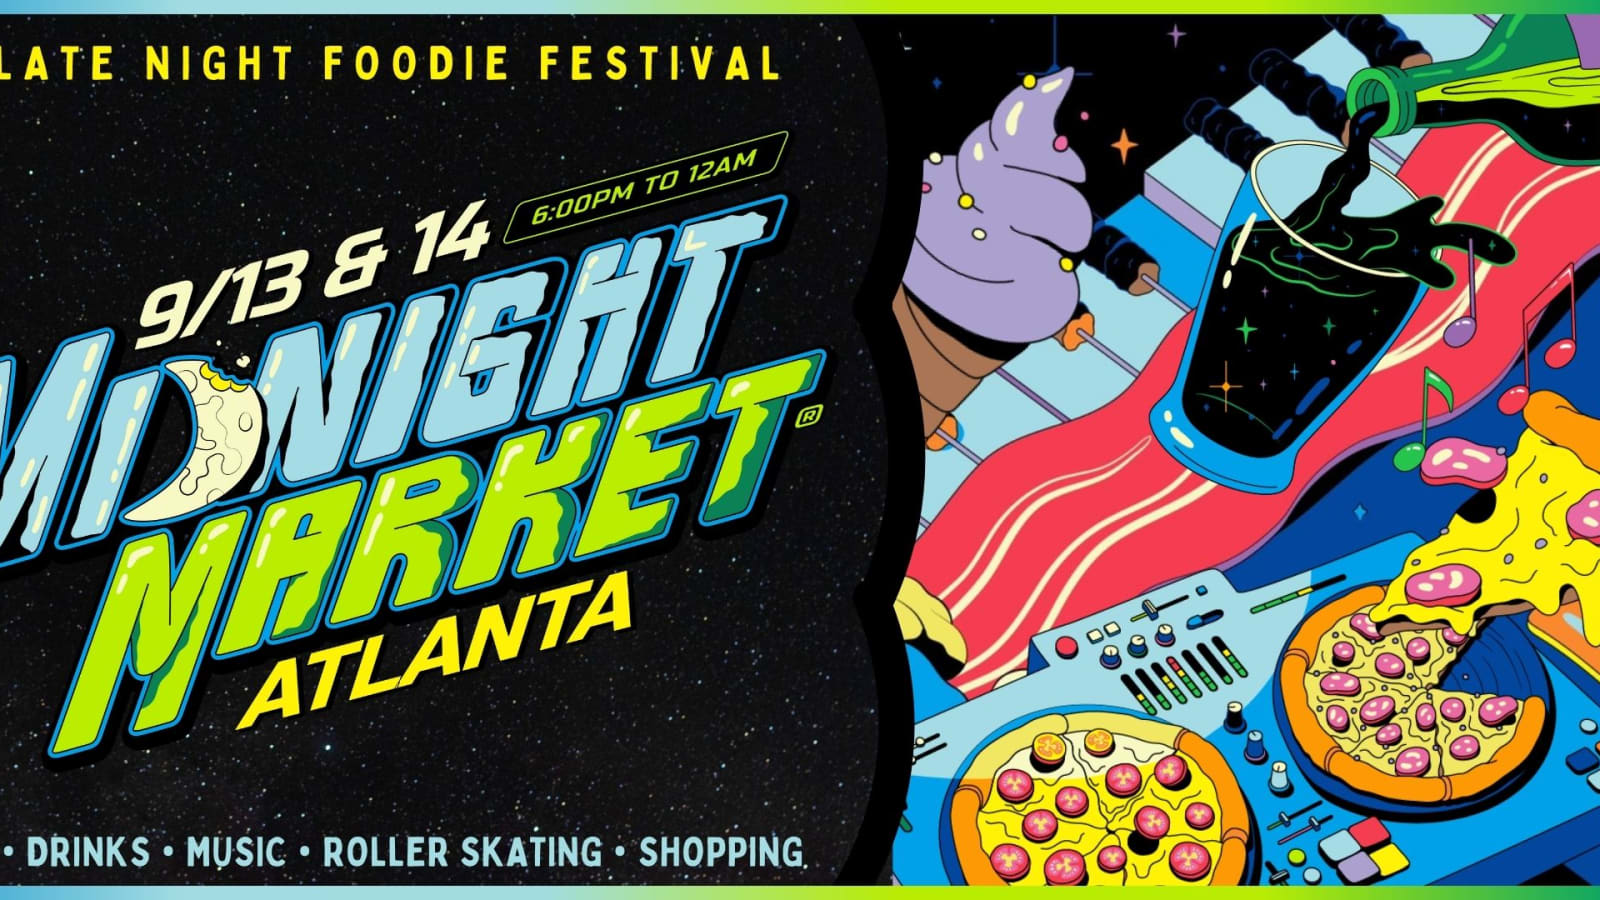 Midnight Market Atlanta